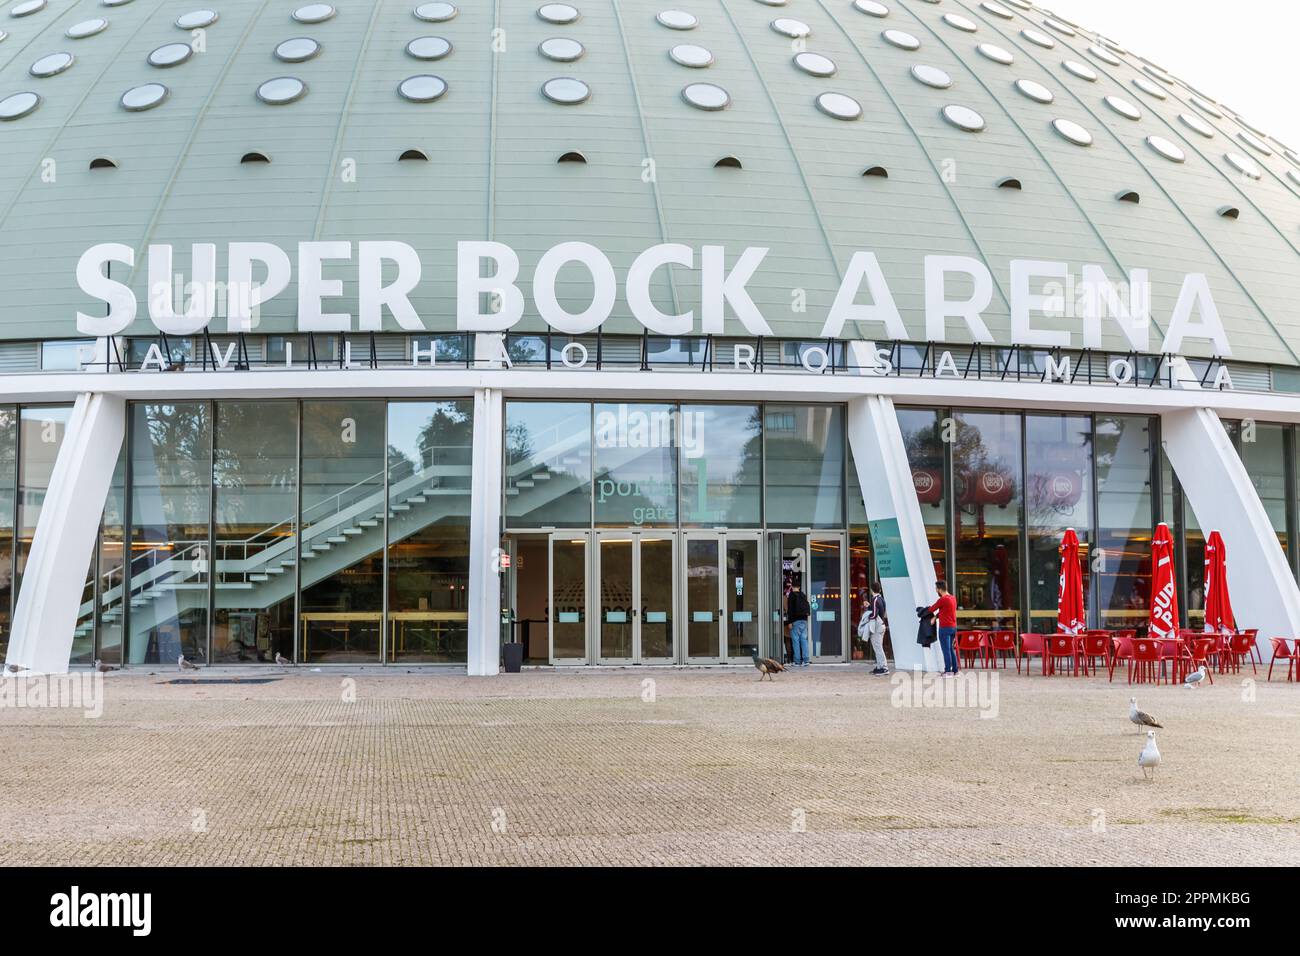 Super Bock Arena pavilion Rosa Mota in Porto, Portugal Stock Photo